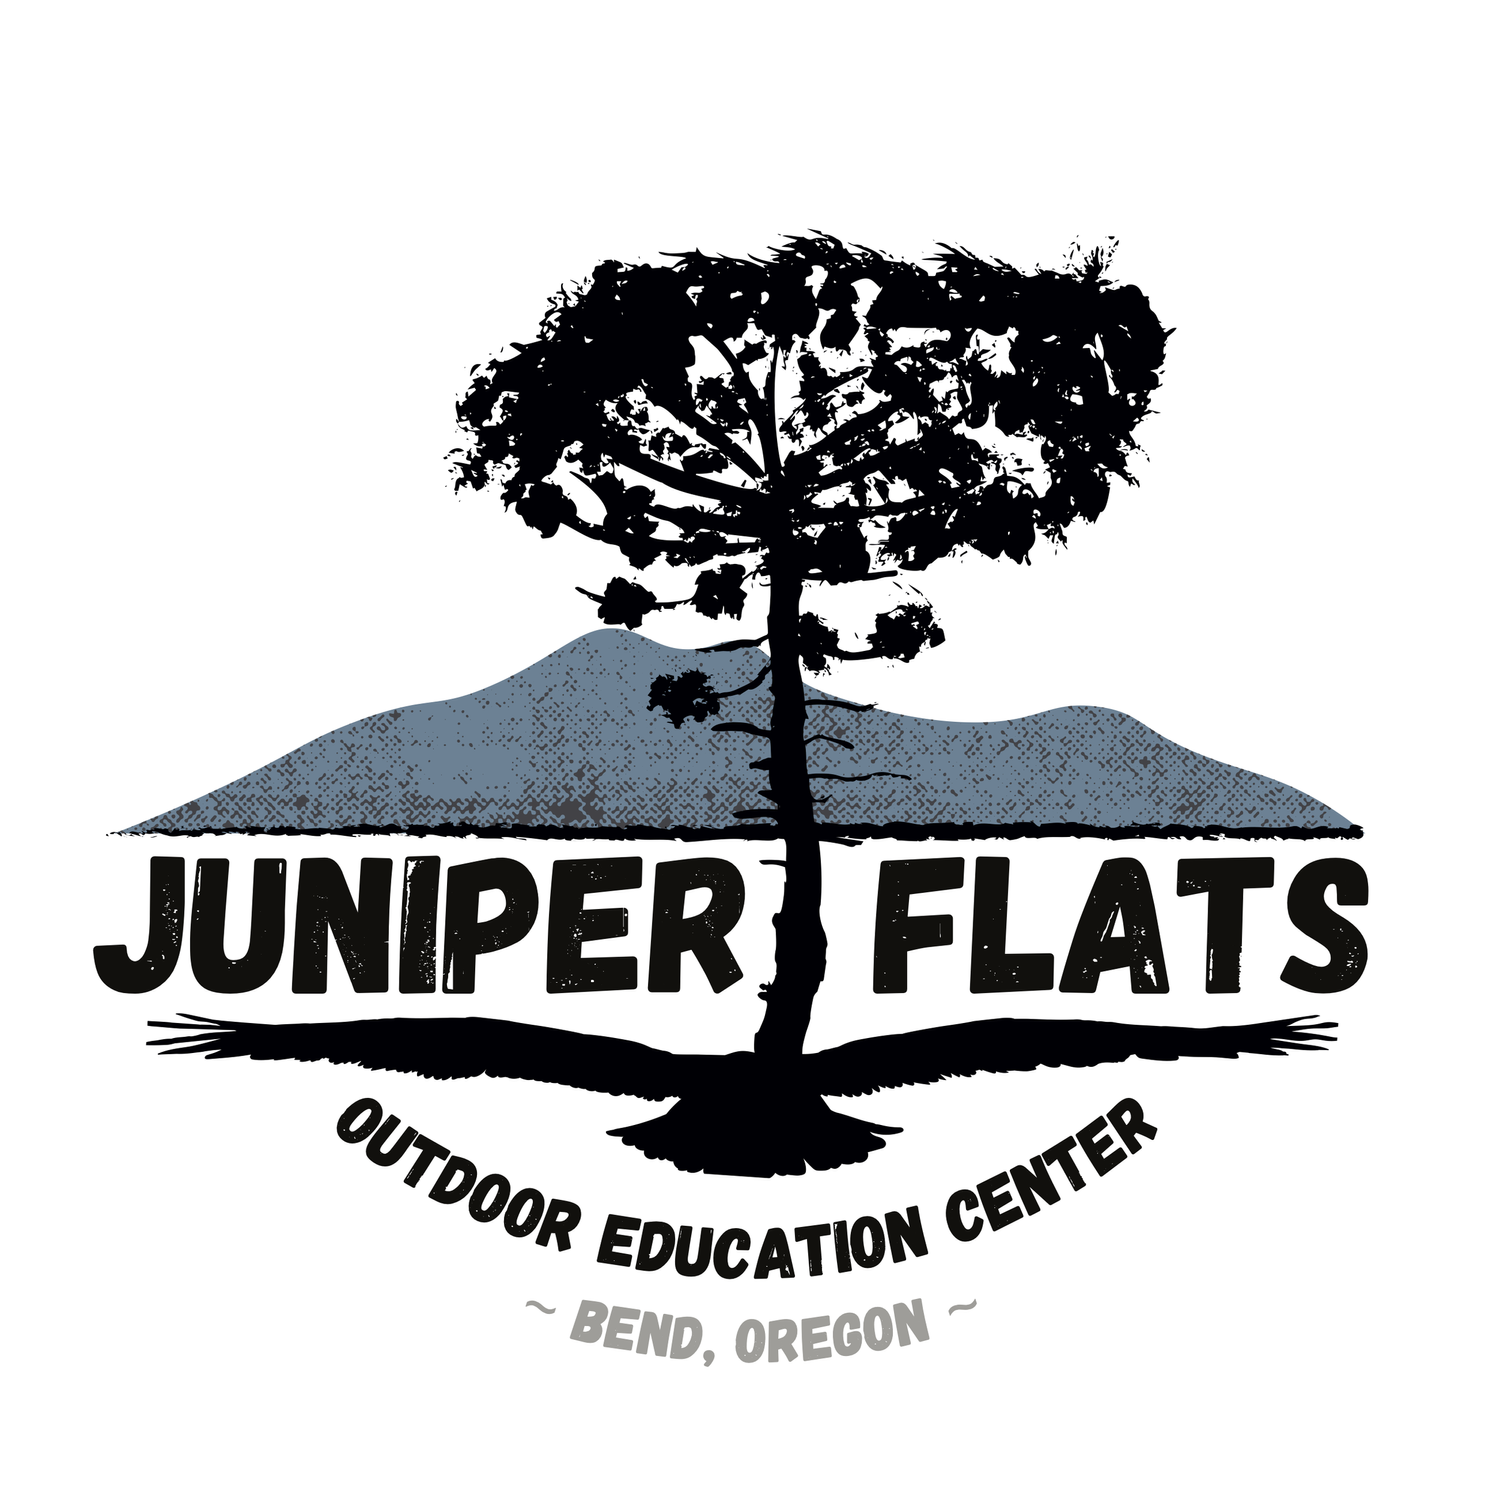 Juniper Flats Outdoor Education Center